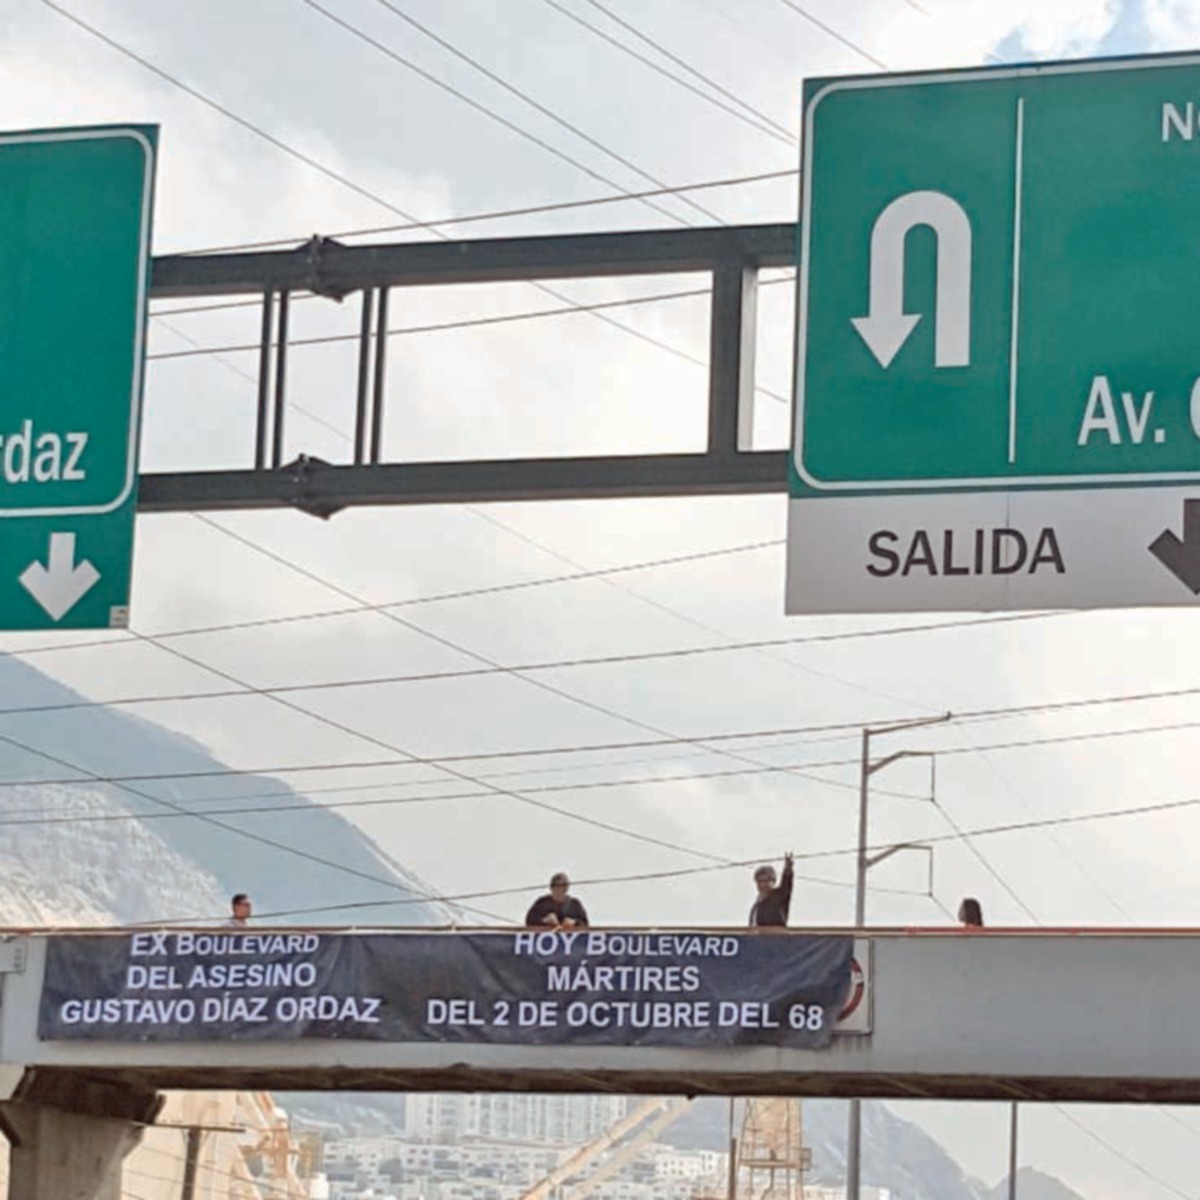 Piden en Nuevo León quitar a monumentos y vías el nombre de Díaz Ordaz 